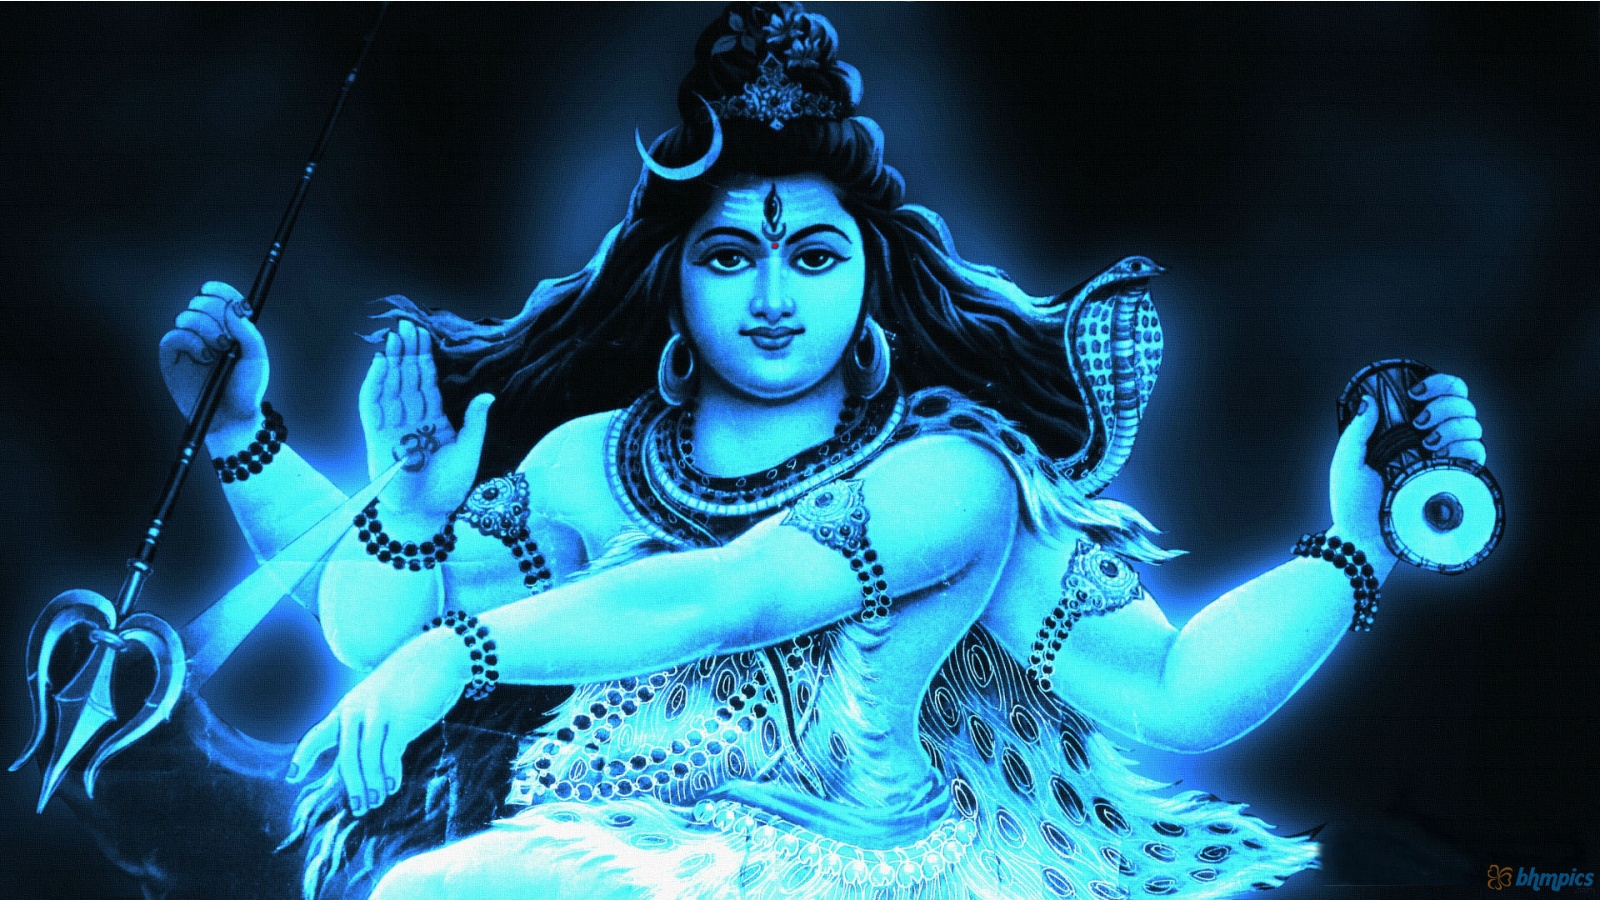 [50+] Shiva Images Wallpapers - WallpaperSafari